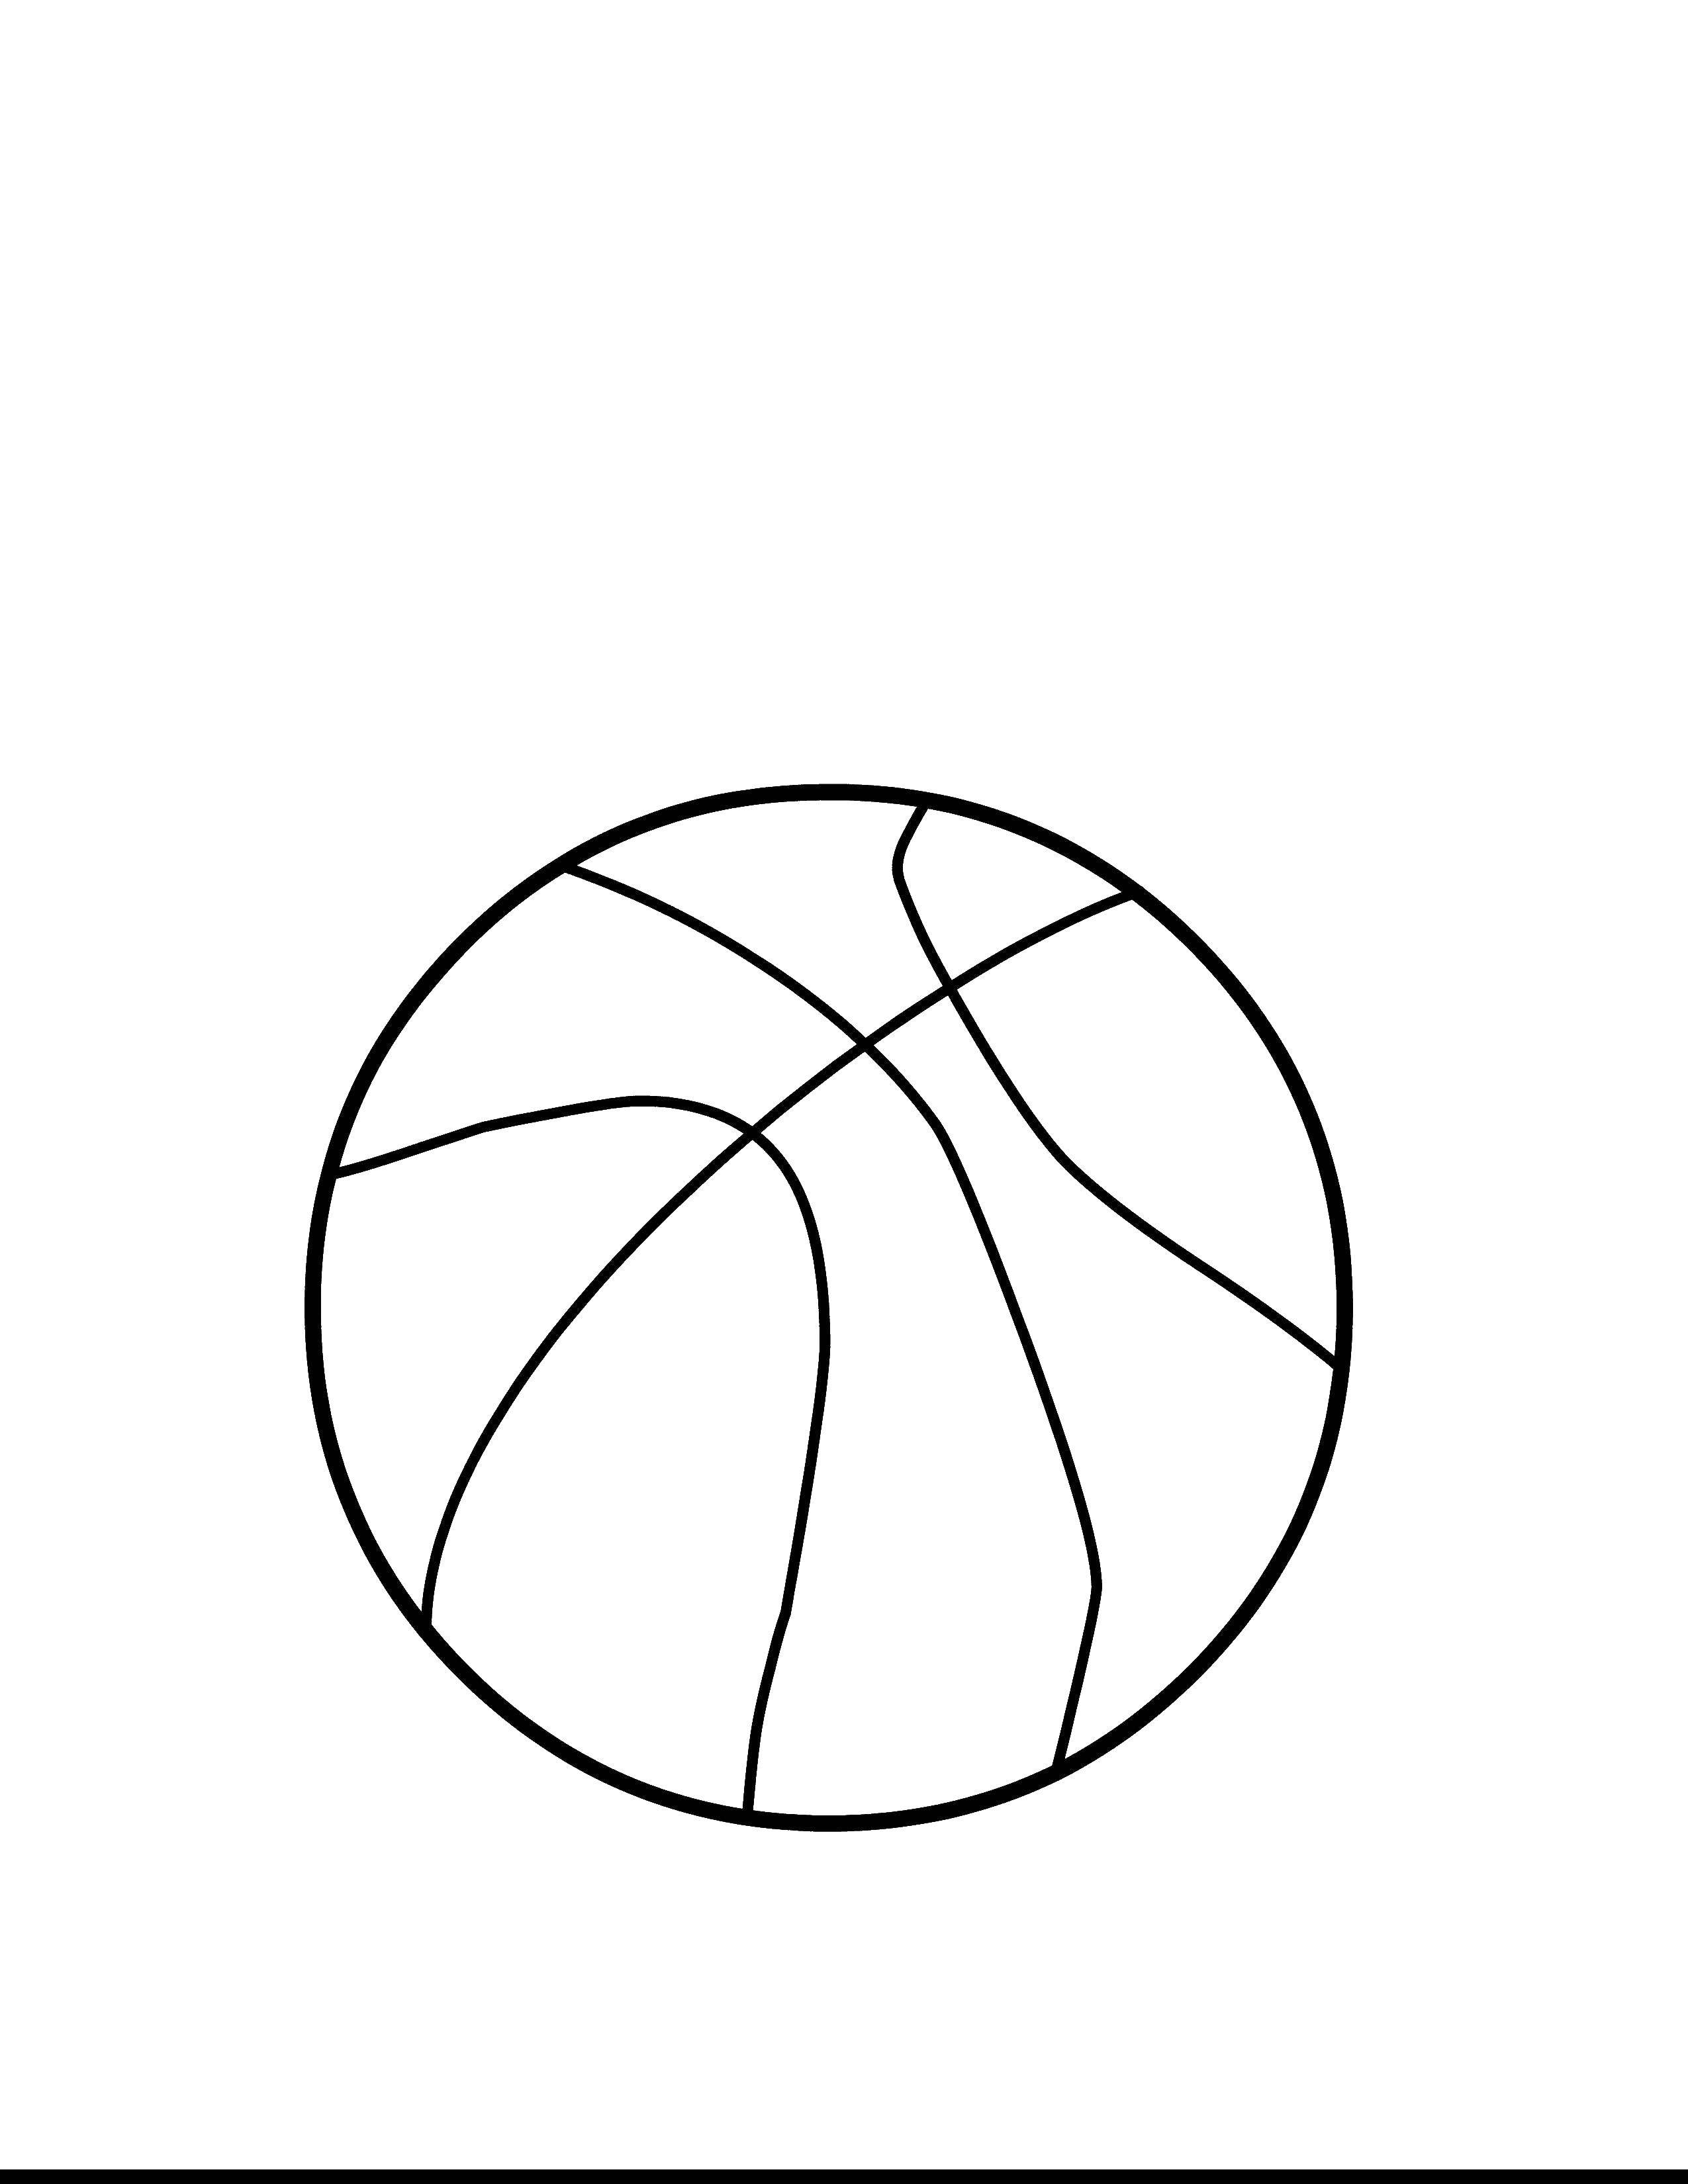 Название: Раскраска Баскетбольный мяч. Категория: Спорт. Теги: спорт, баскетбольный мяч.